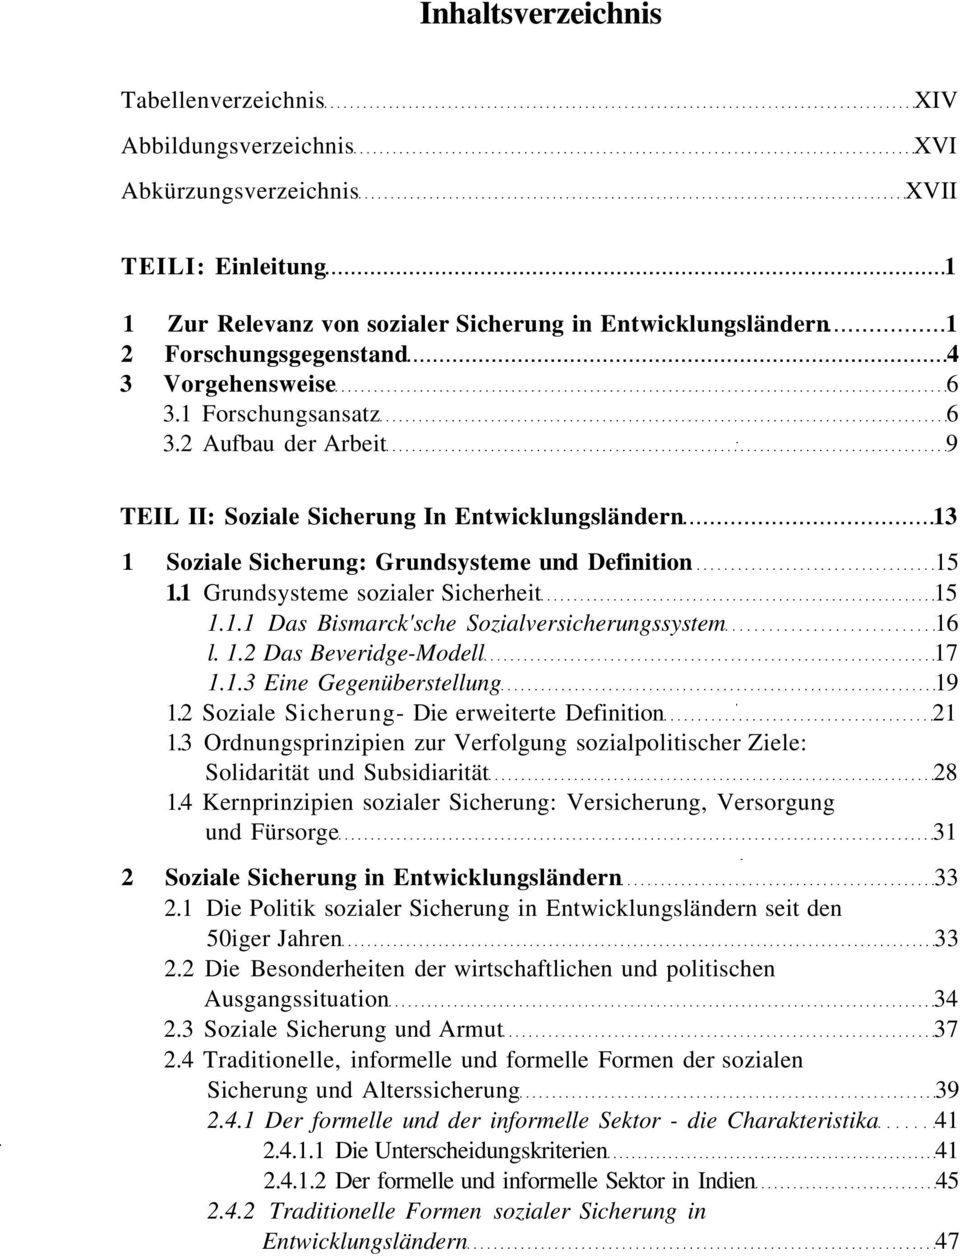 1 Grundsysteme sozialer Sicherheit 15 1.1.1 Das Bismarck'sche Sozialversicherungssystem 16 l. 1.2 Das Beveridge-Modell 17 1.1.3 Eine Gegenüberstellung 19 1.